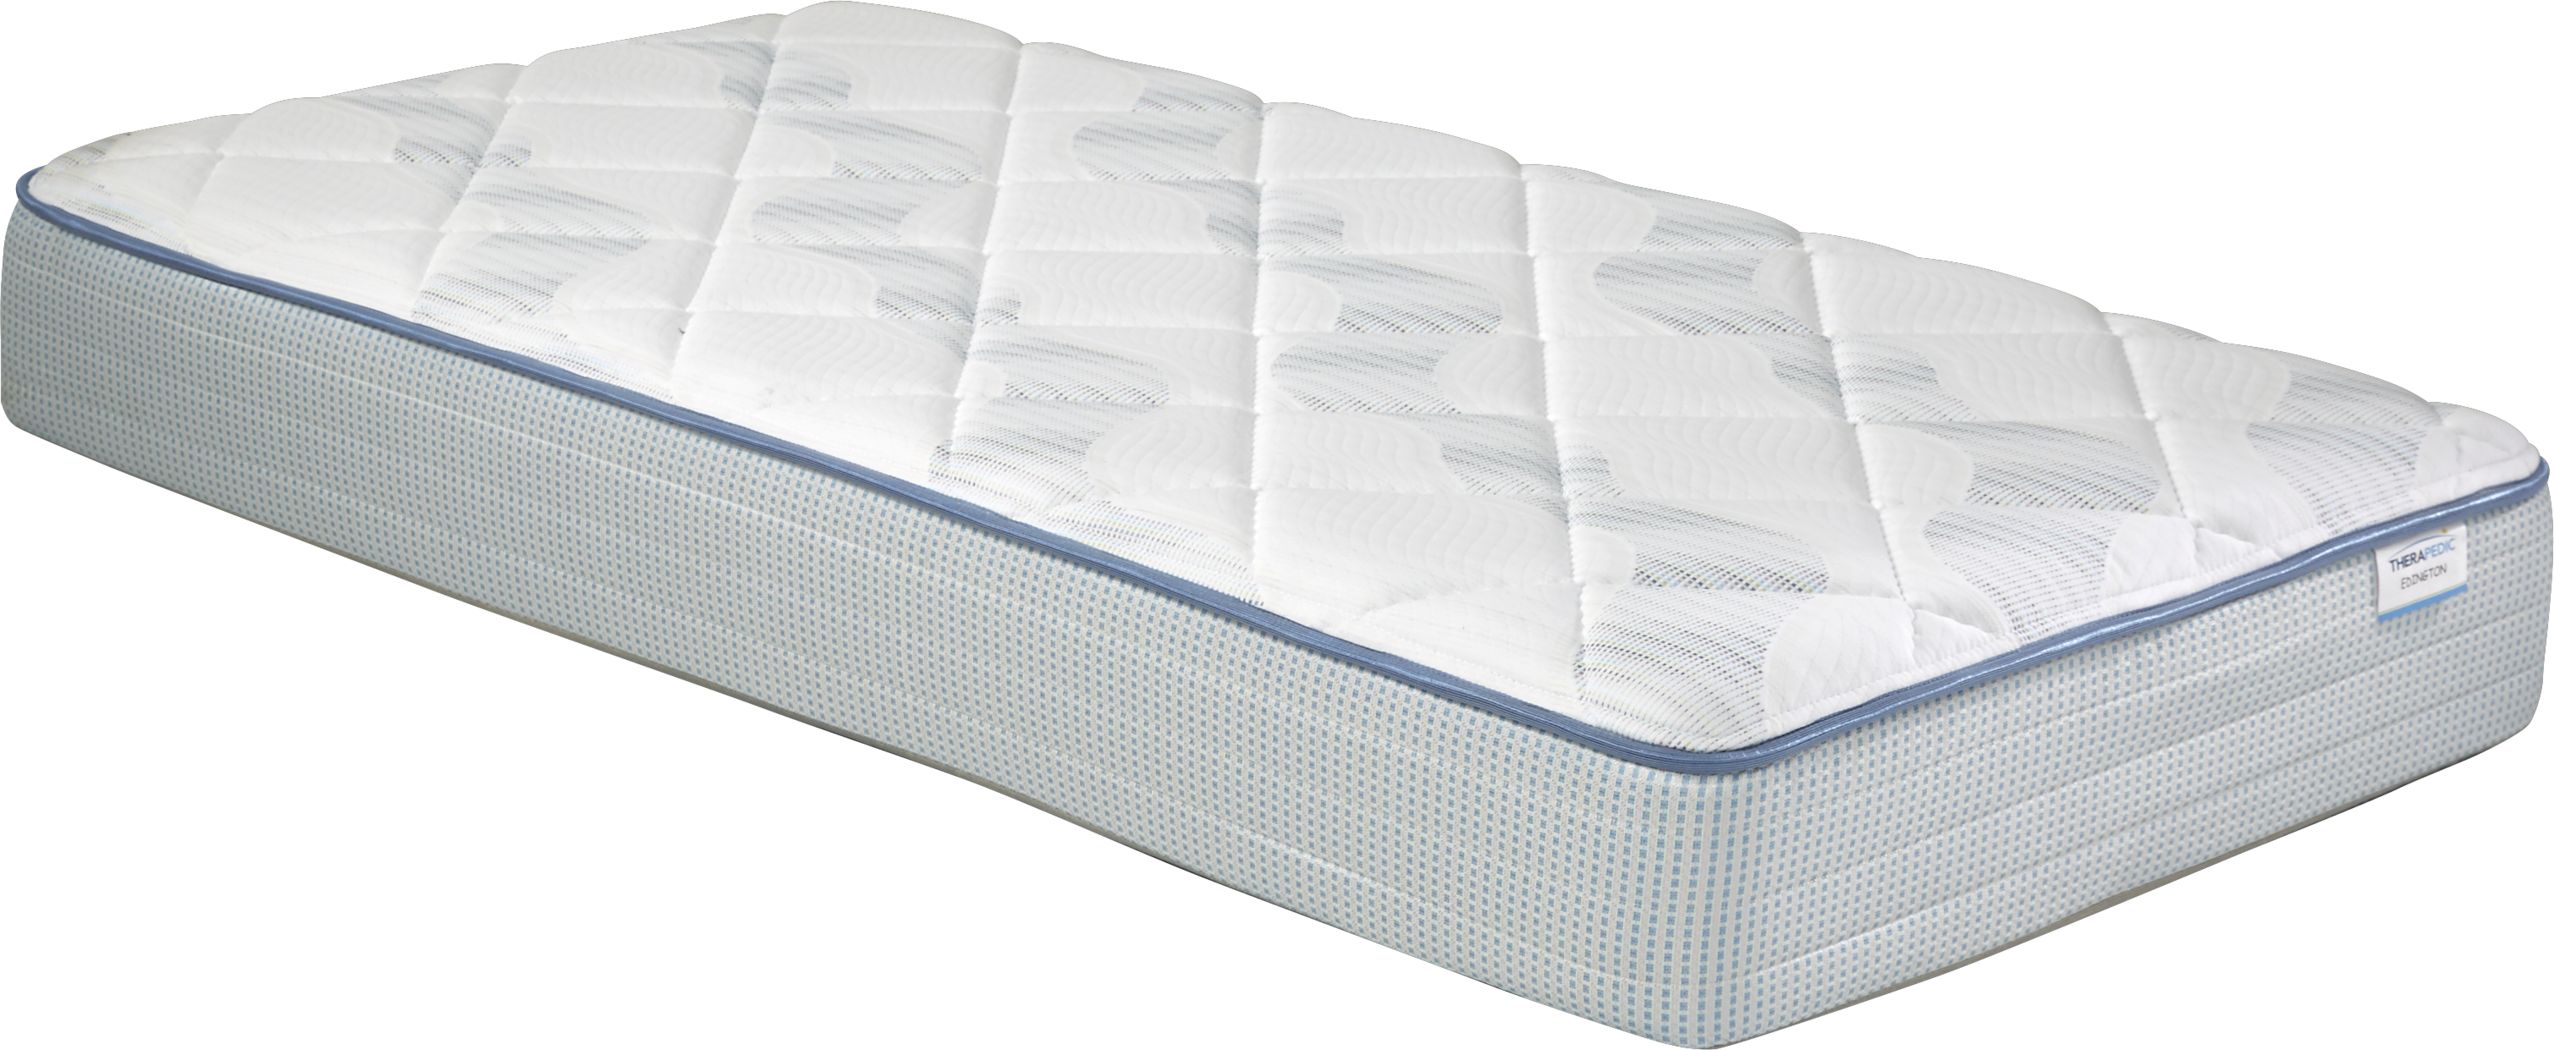 twin 10 inch therapedic international mattress